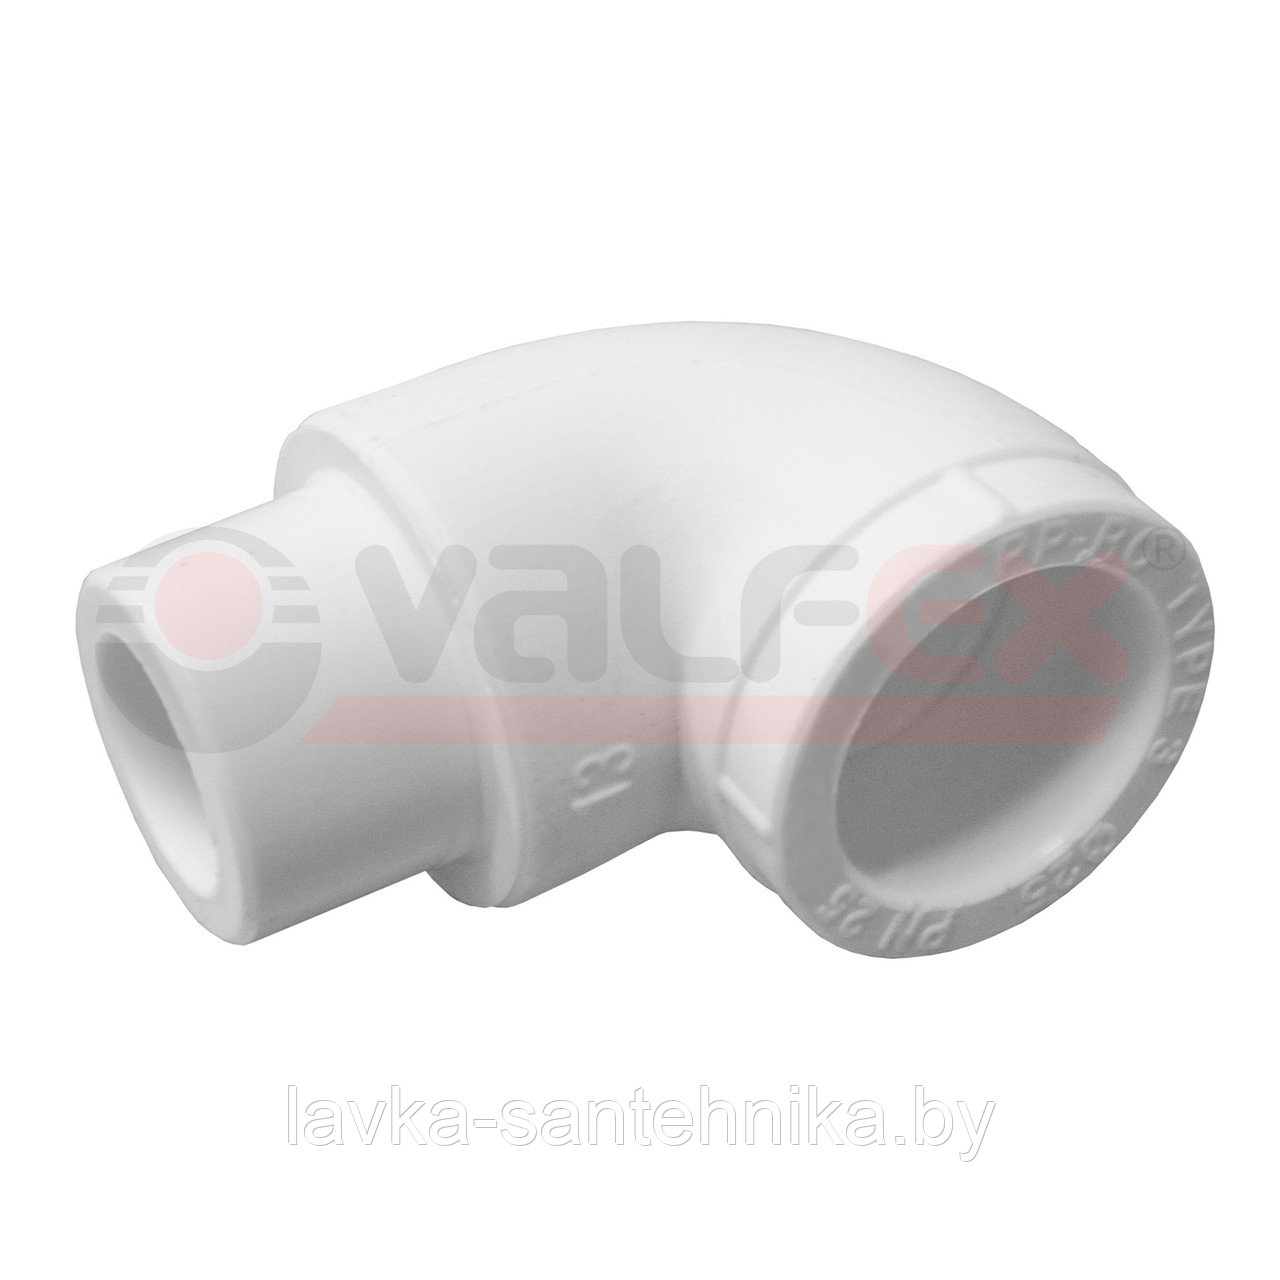 Угол полипропиленовый внутренний/наружный (ø20, 90°) Valfex, цвет: белый/серый